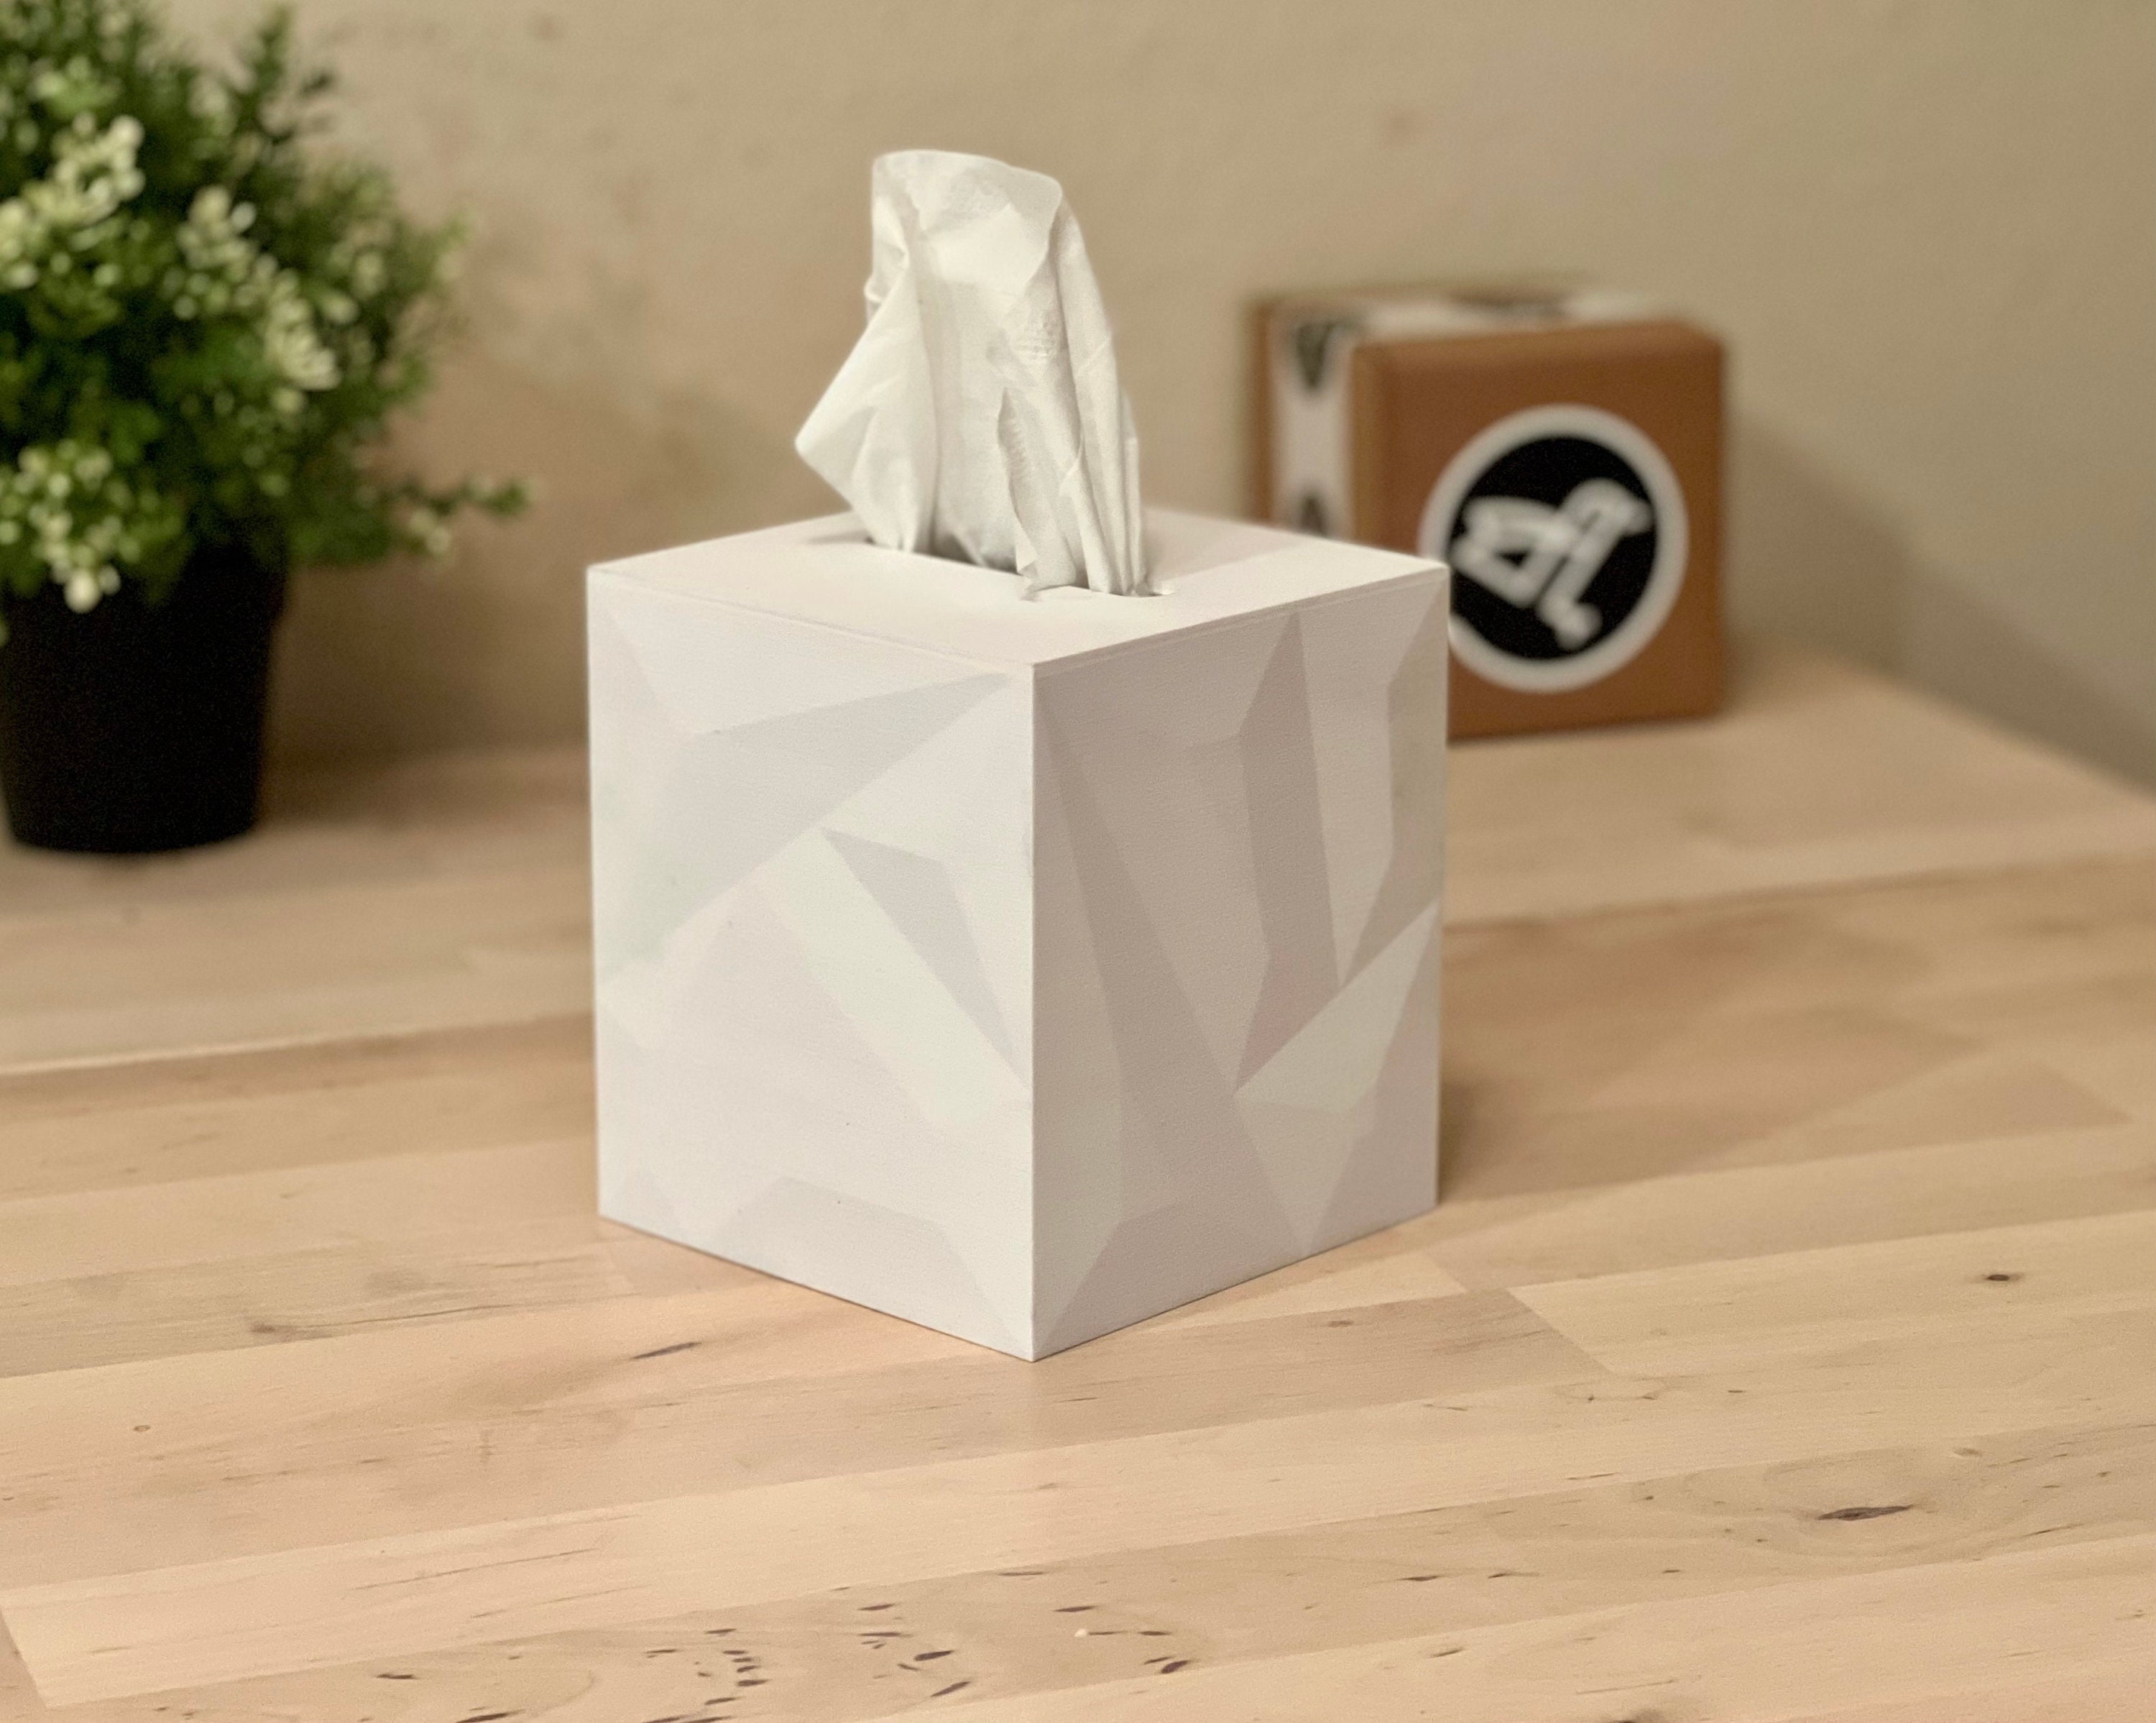 Tissue Box Cover Retro Wavy Squiggly Line Tissue Cover Kleenex Box Cover  Tissues Box Square Geometric Minimalist Organizer Cube Bath Decor 